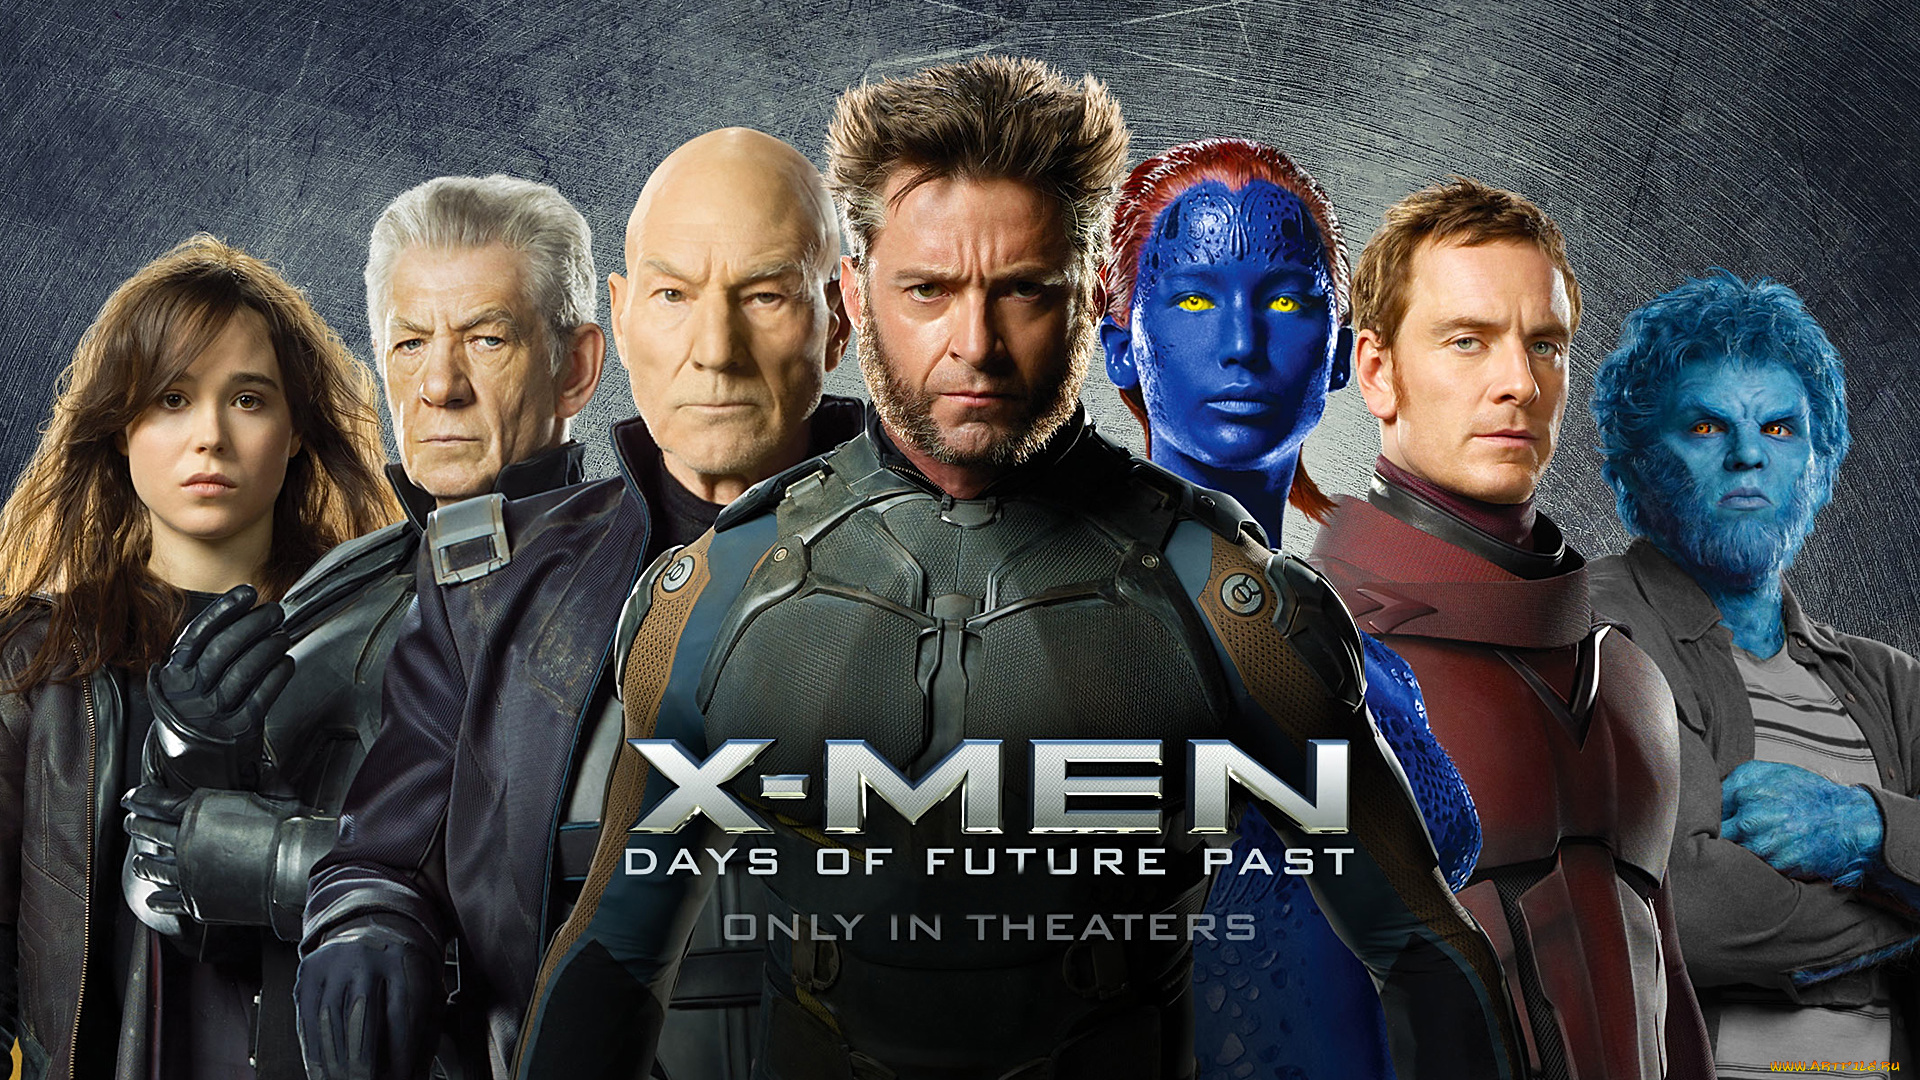 x-men, , days, of, future, past, кино, фильмы, дни, минувшего, будущего, люди, икс